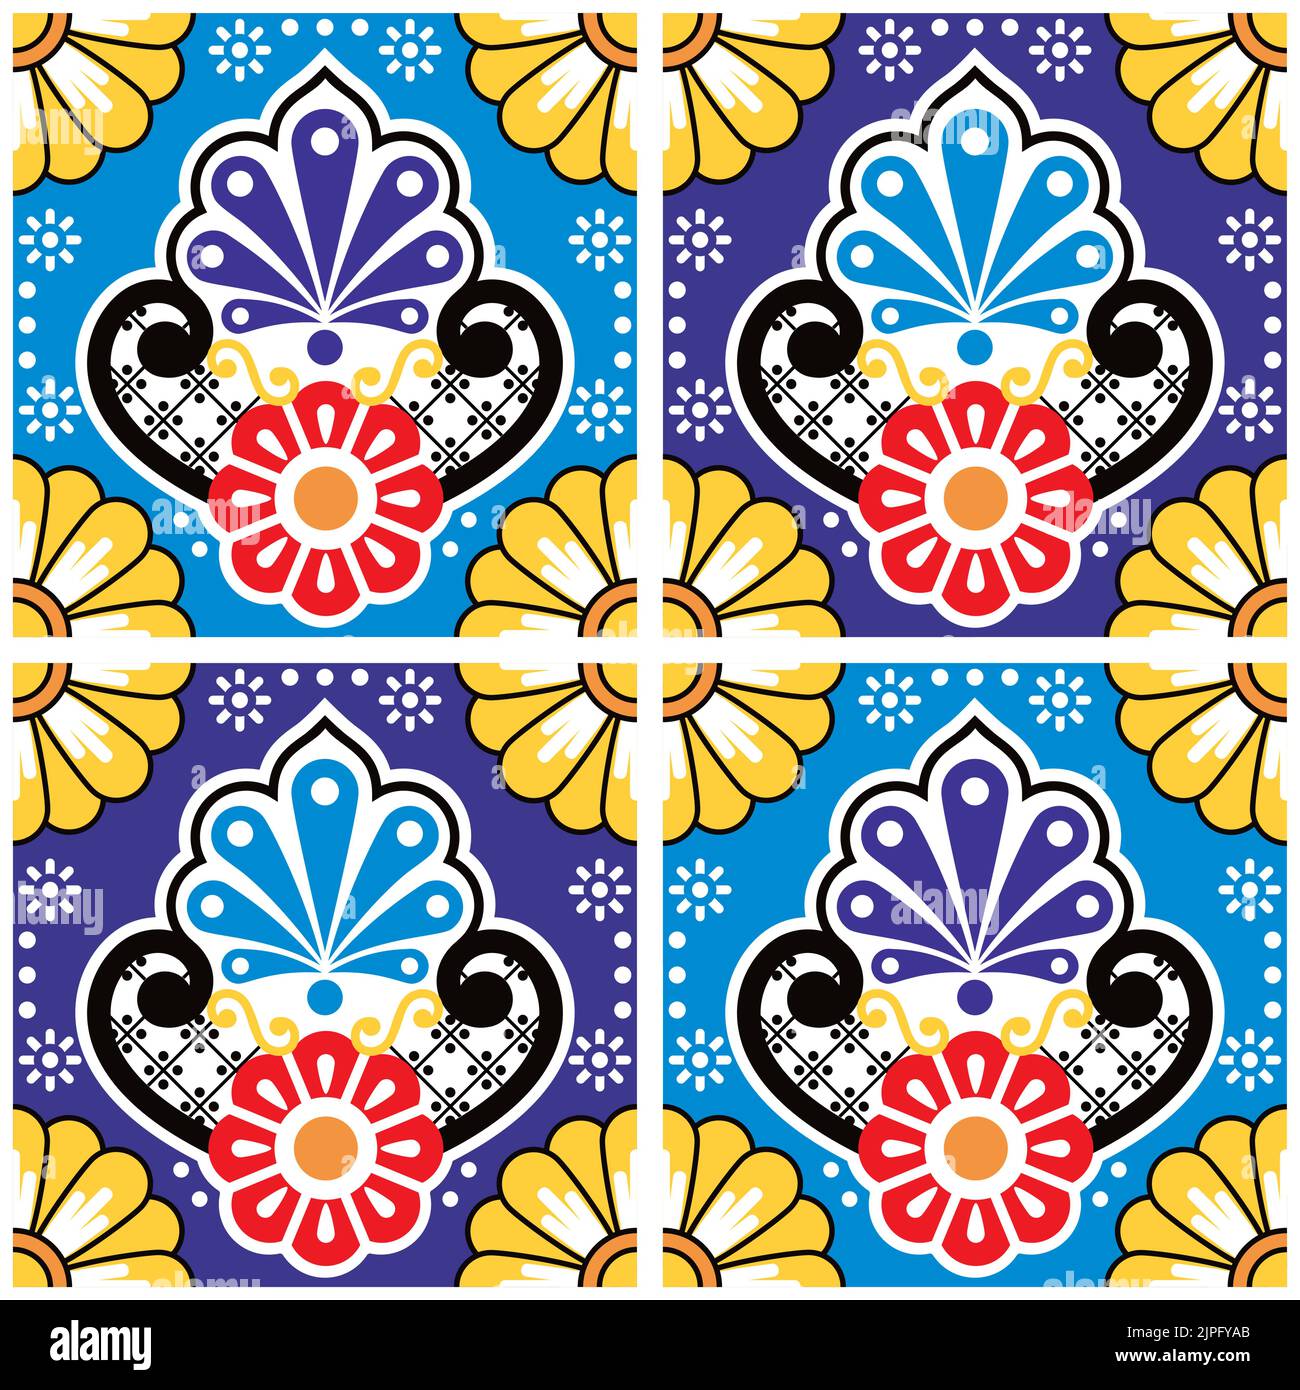 Fliesen nahtlose Vektor-Muster von Volkskunst aus Mexiko mit Blumen und dekoratives Design inspiriert Stock Vektor